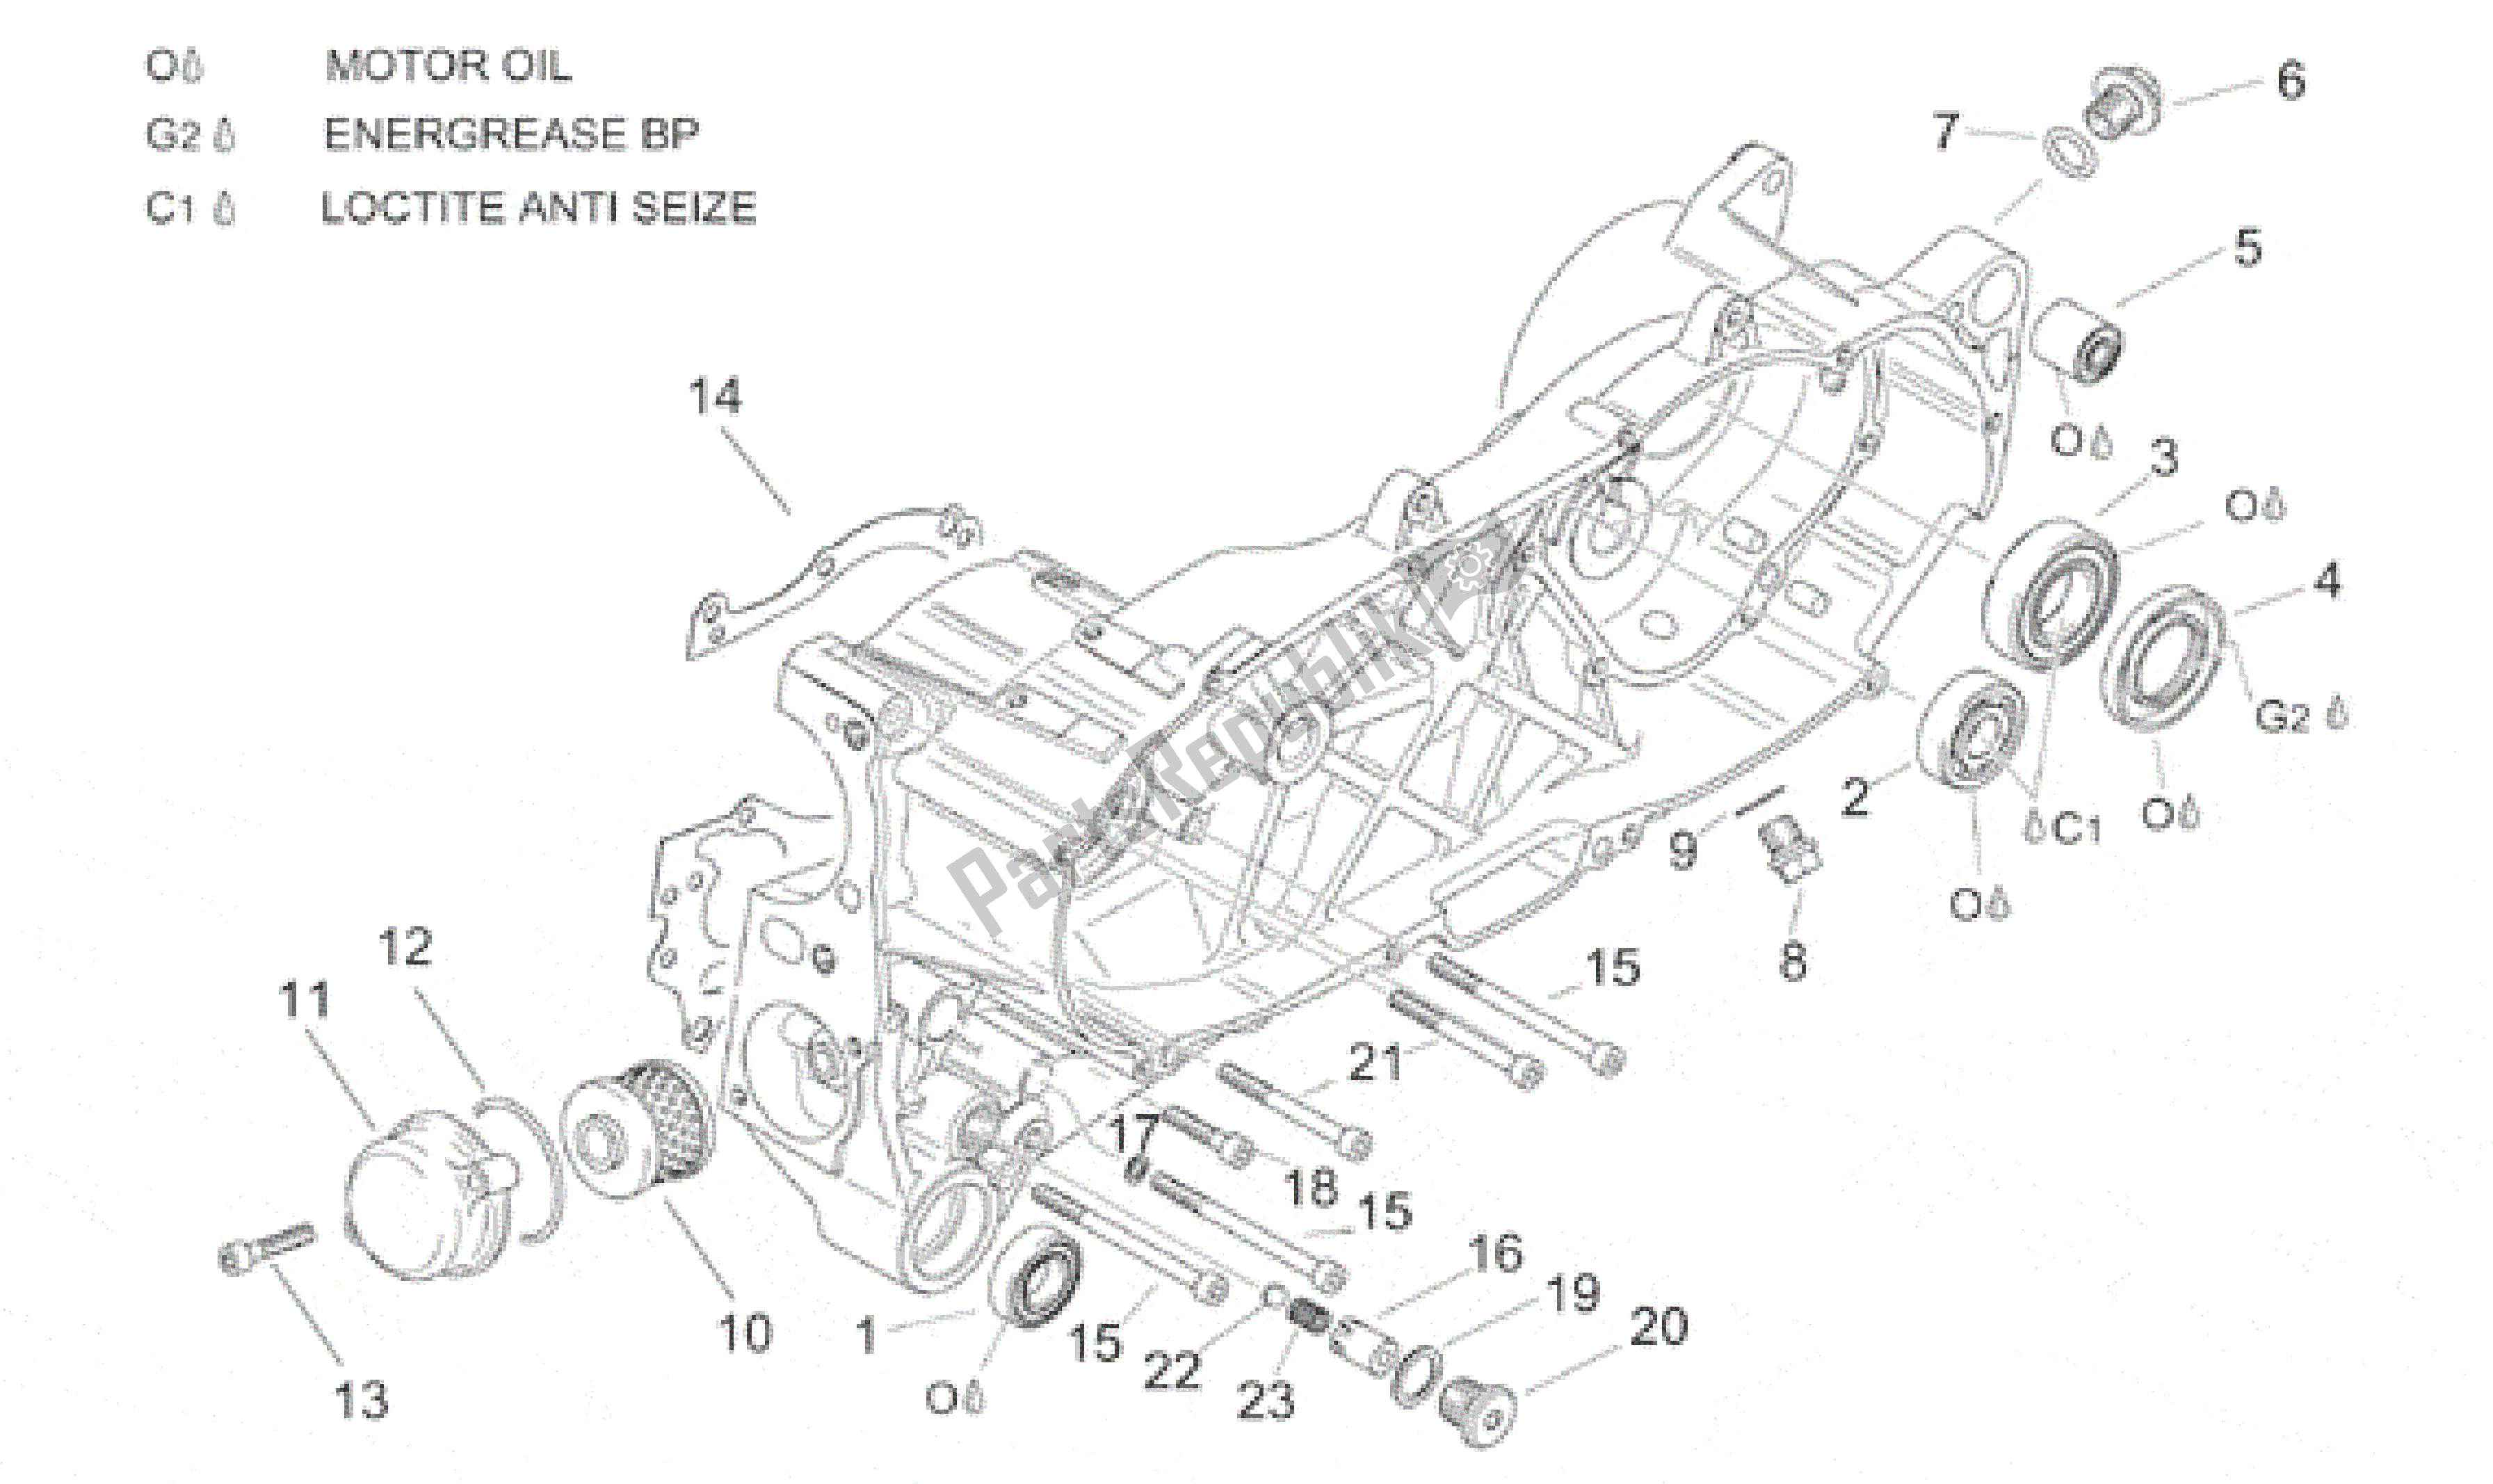 All parts for the Central Semi-crankcase of the Aprilia Leonardo 150 1999 - 2001